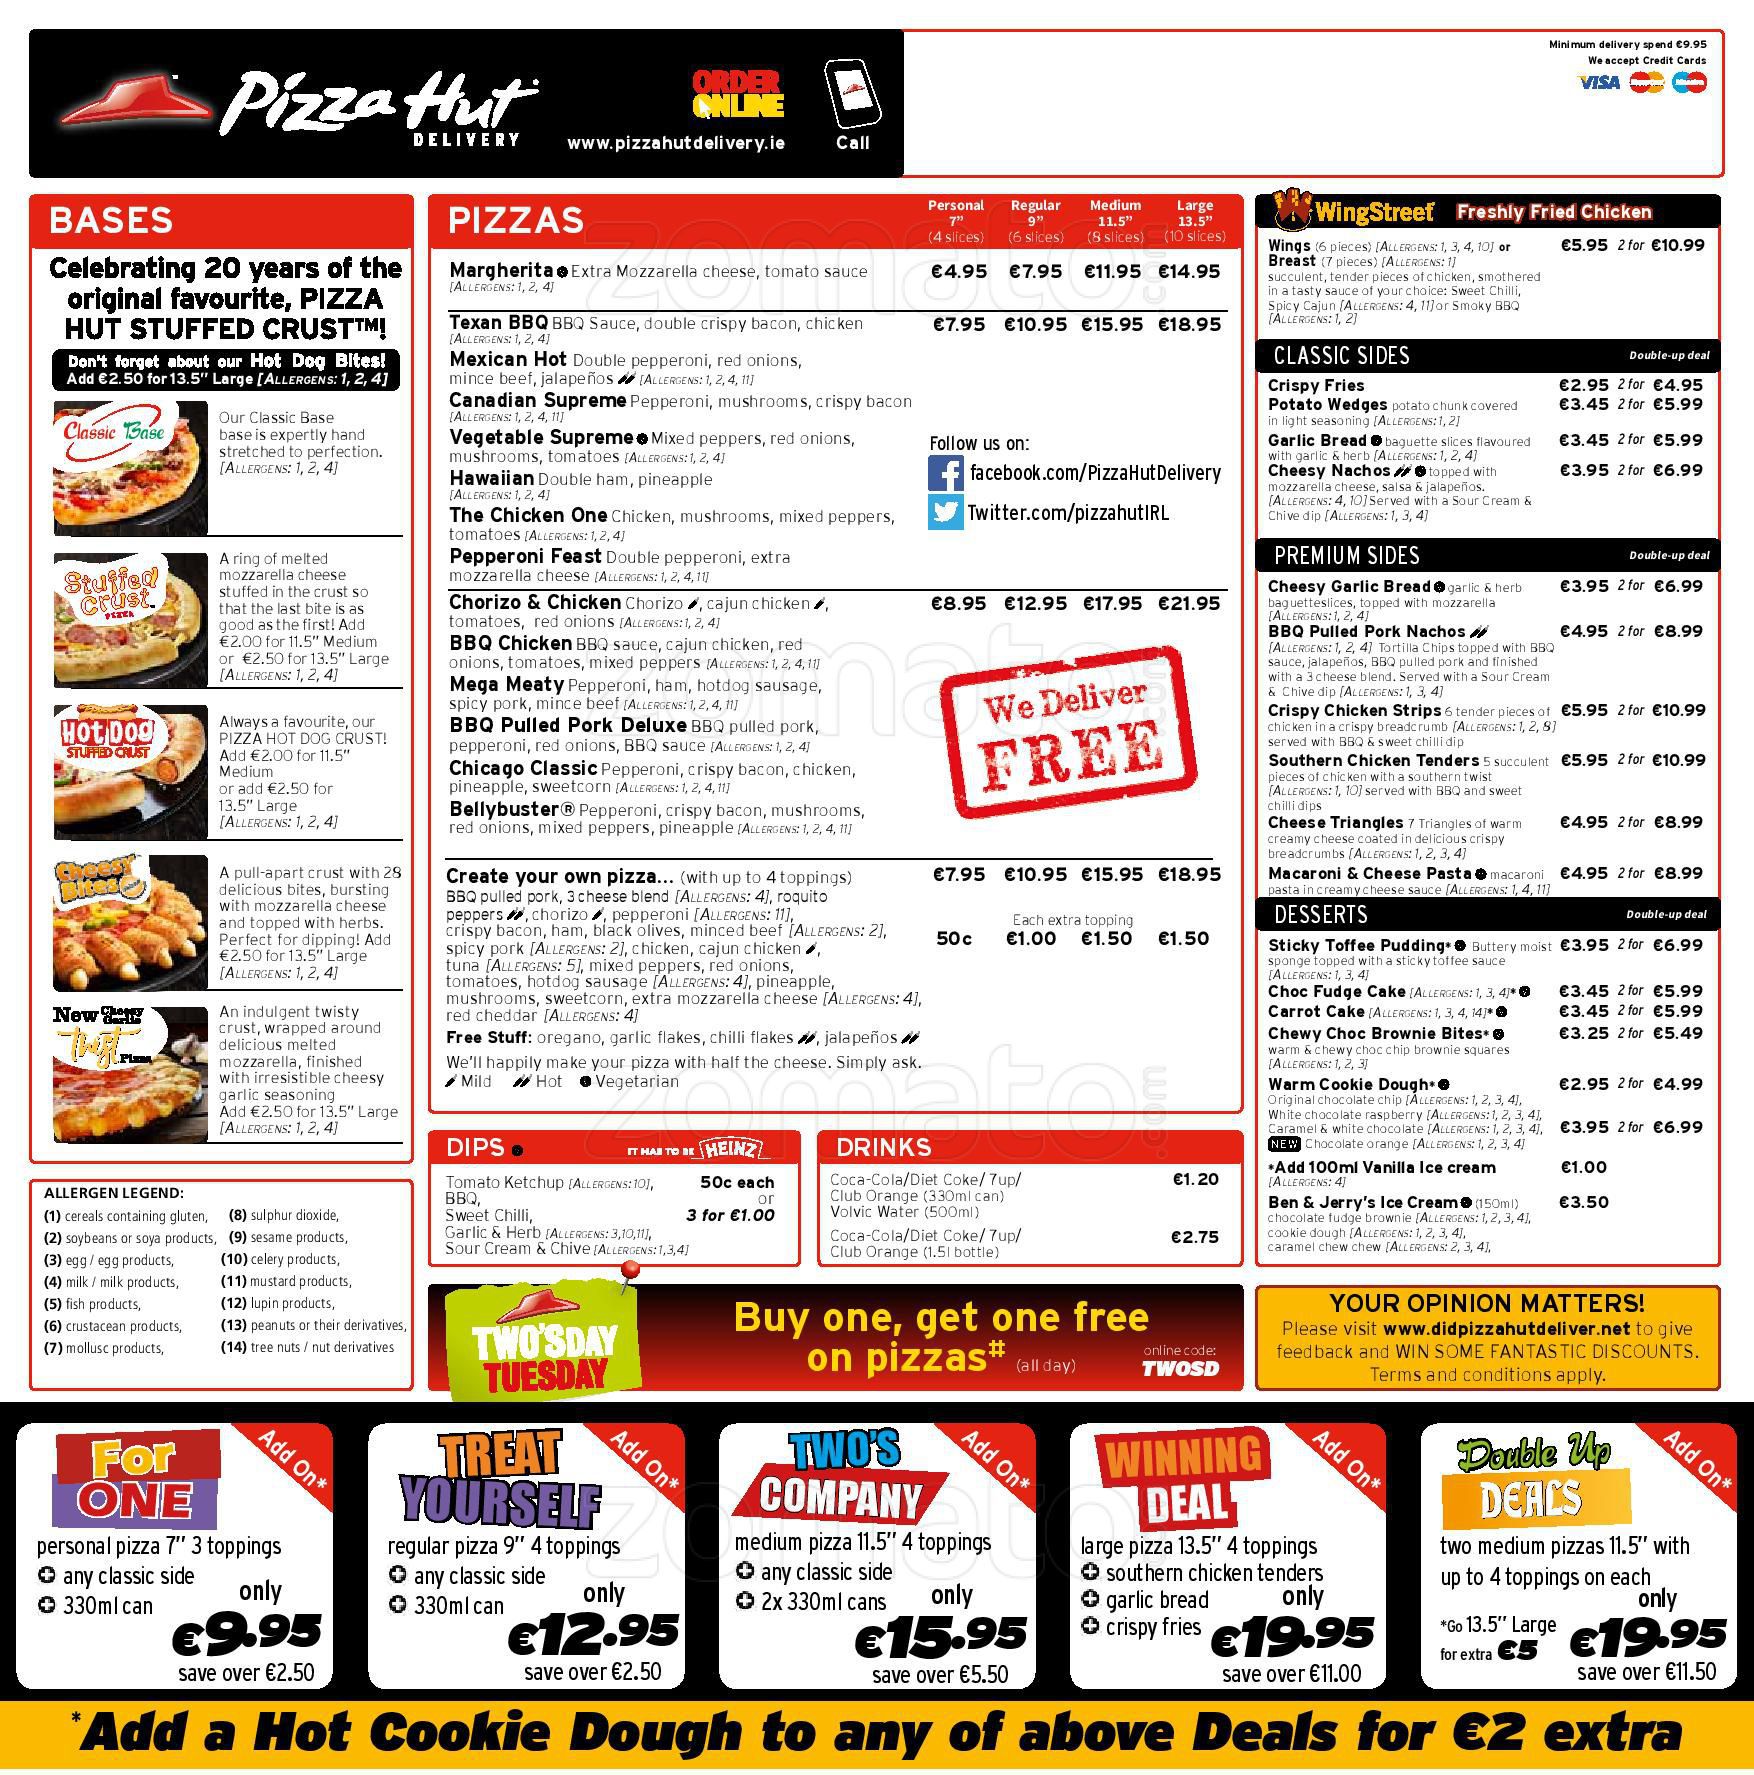 Download Gambar Pizza Hut Mozzarella - Vina Gambar